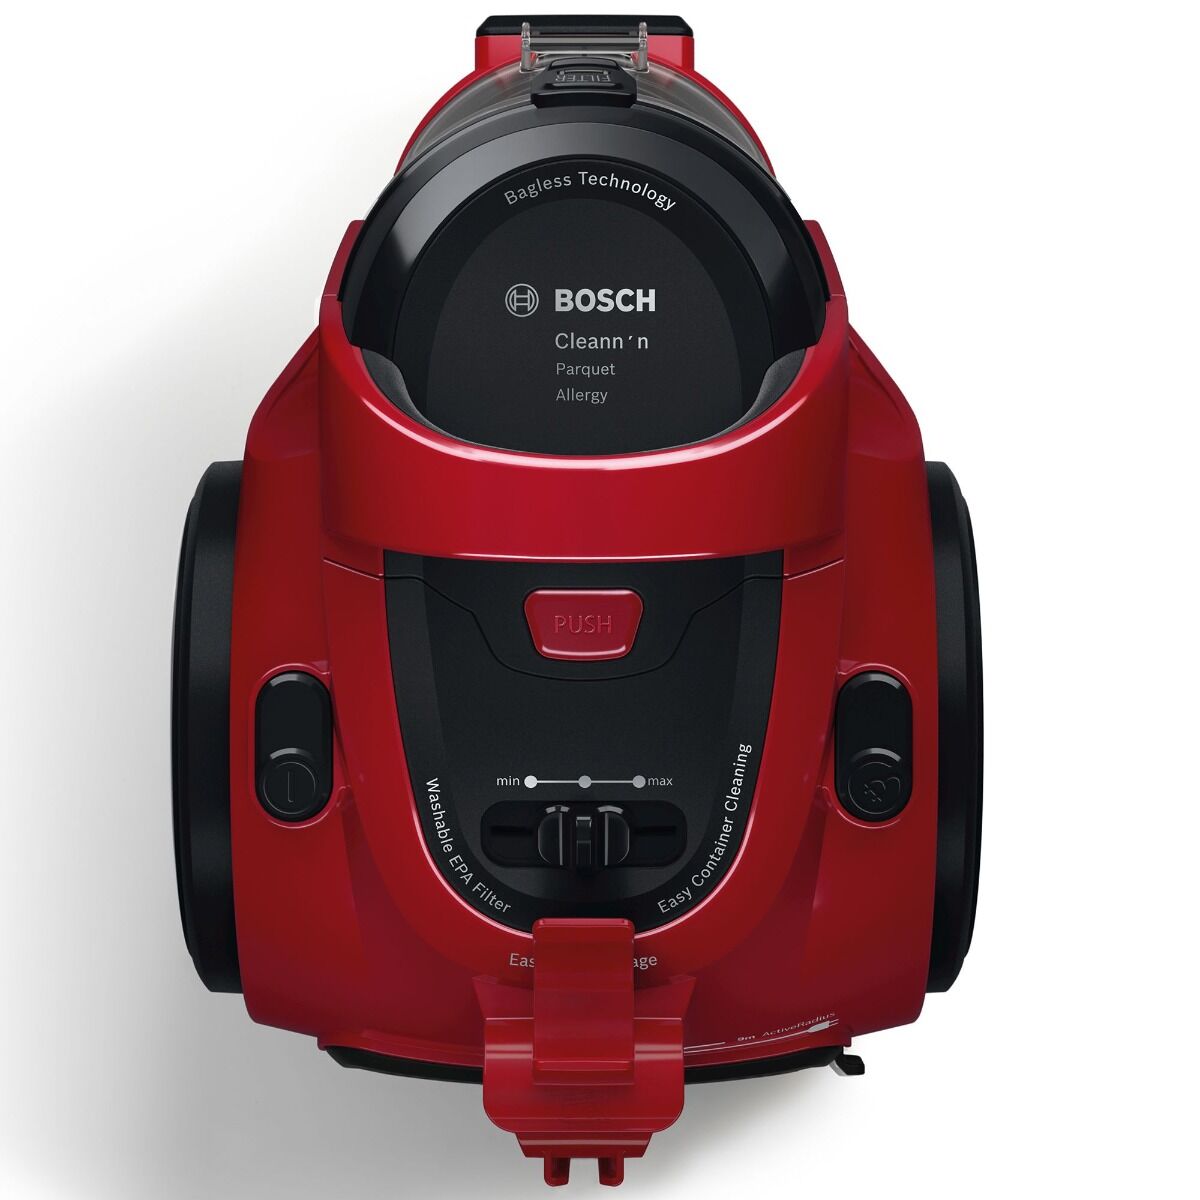 Aspirator fara sac Bosch 3A BGC05AAA2, 700W, 1.5 l, Filtru igienic PureAir, Perie parchet, Easy Clean, Rosu/Negru